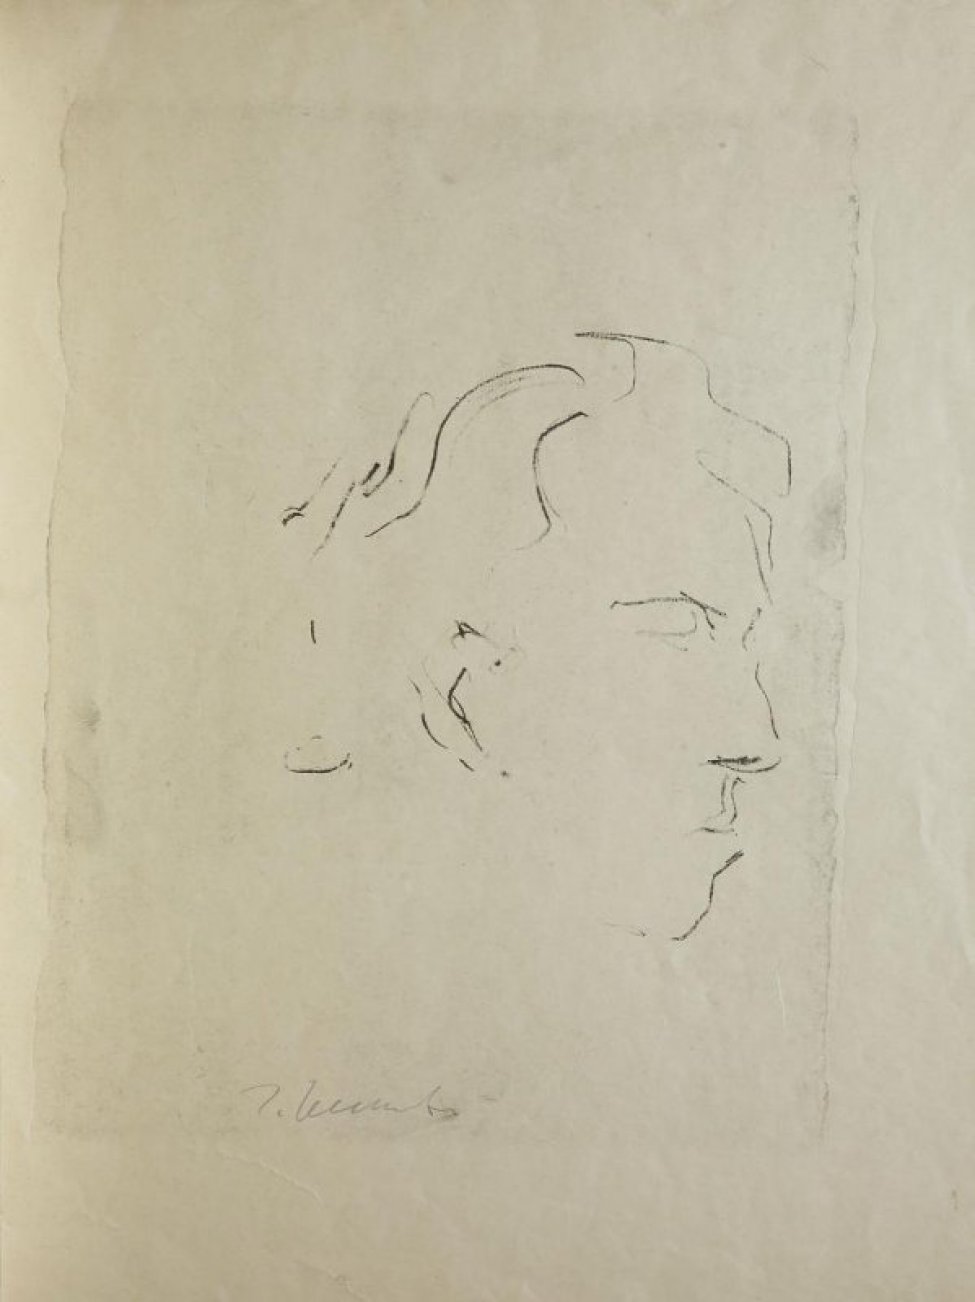 В прямоугольнике оттиска литографского камня с неровными краями дано изображение головы мужчины средних лет в профиль с длинными волнистыми волосами, зачесанными назад.